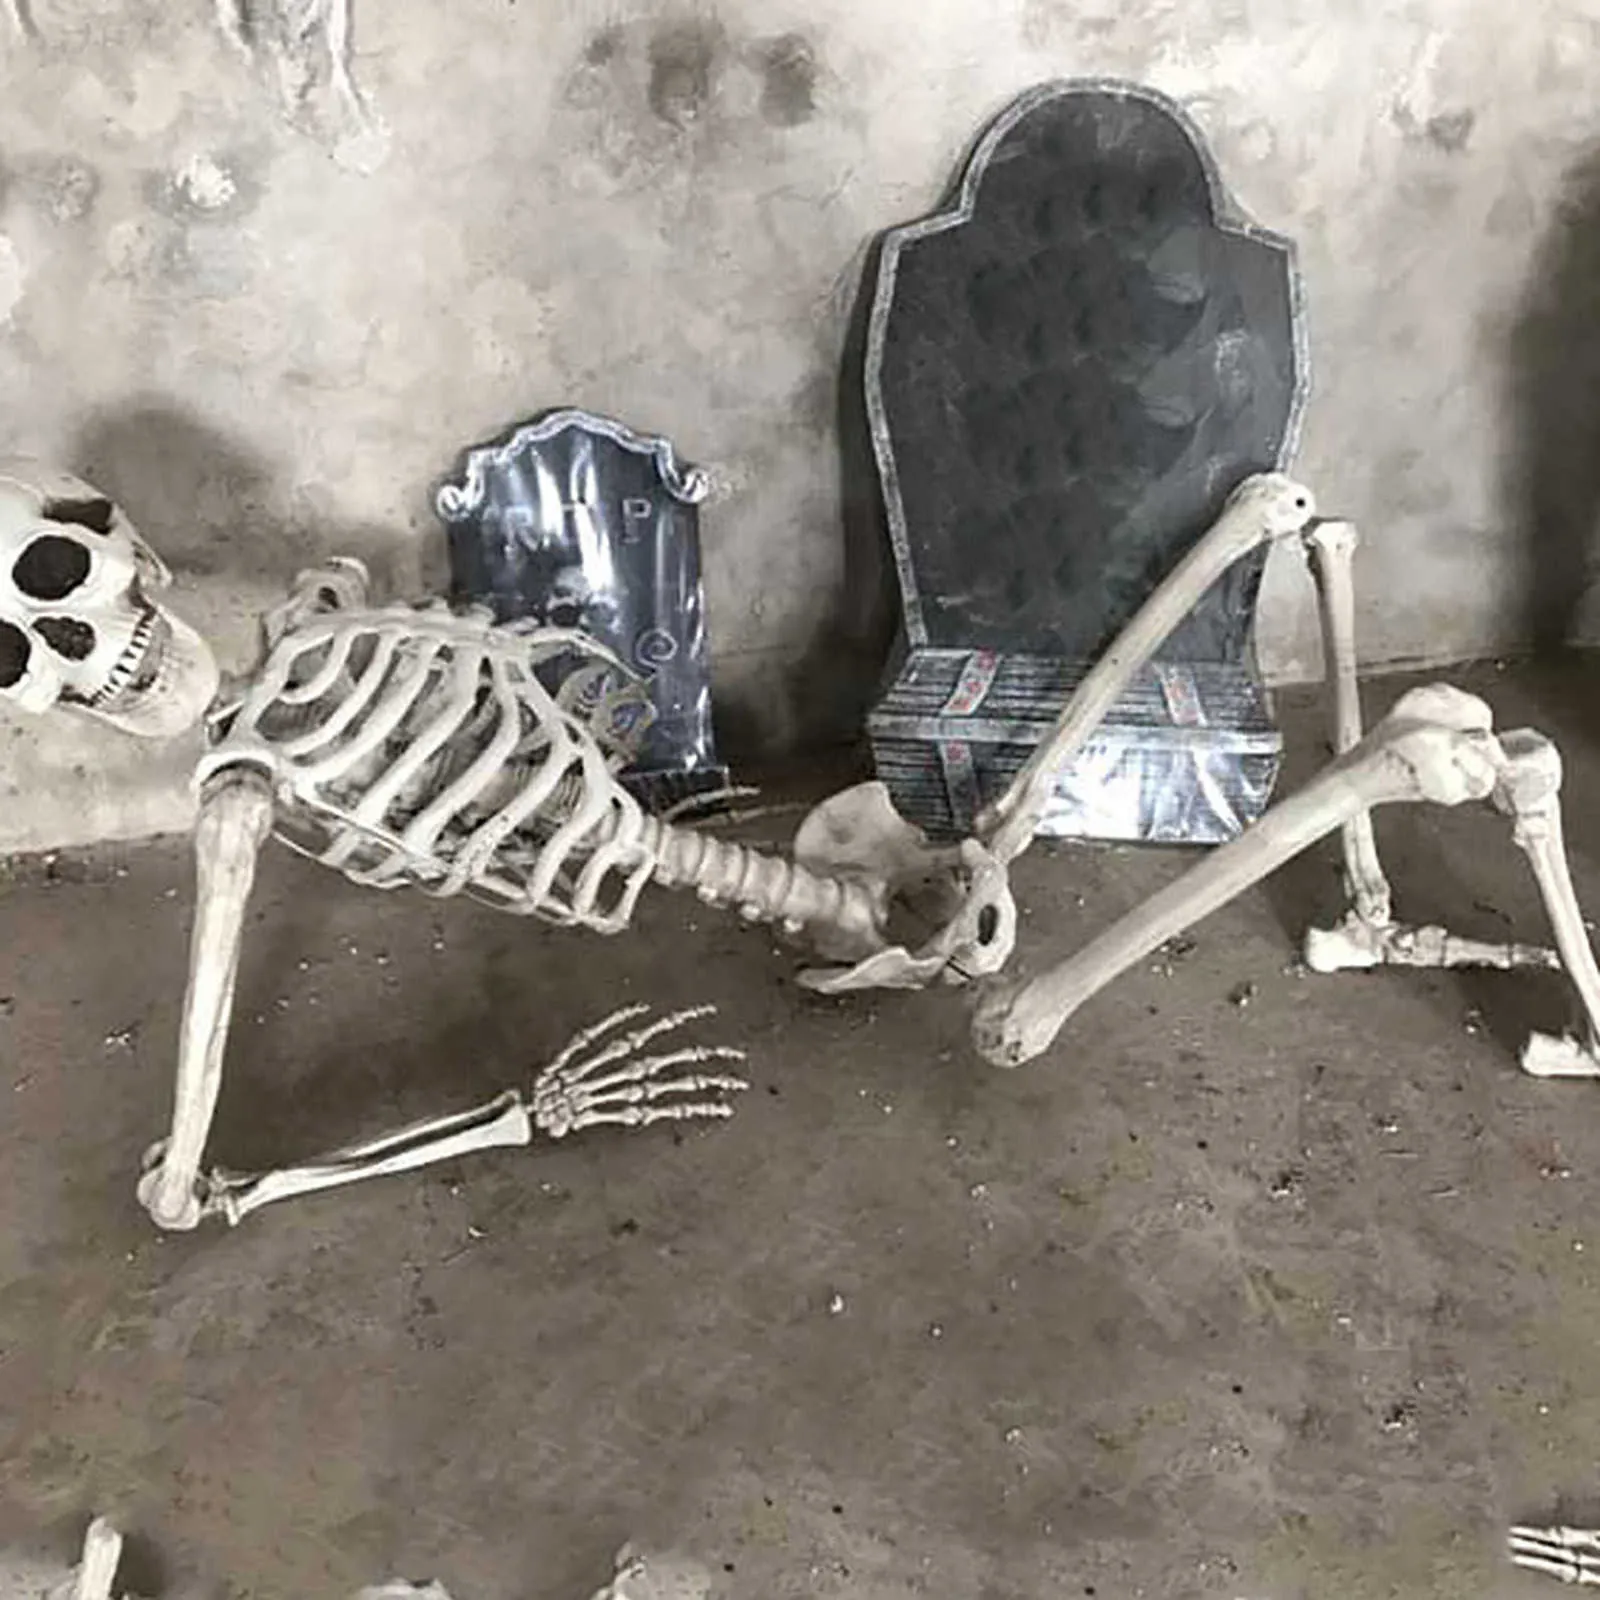 70CM Halloween Squelette Prop Humain Pleine Taille Crâne Main Vie Corps Anatomie Modèle DécorHalloween Party Décor Pour La Maison Y0909266Q